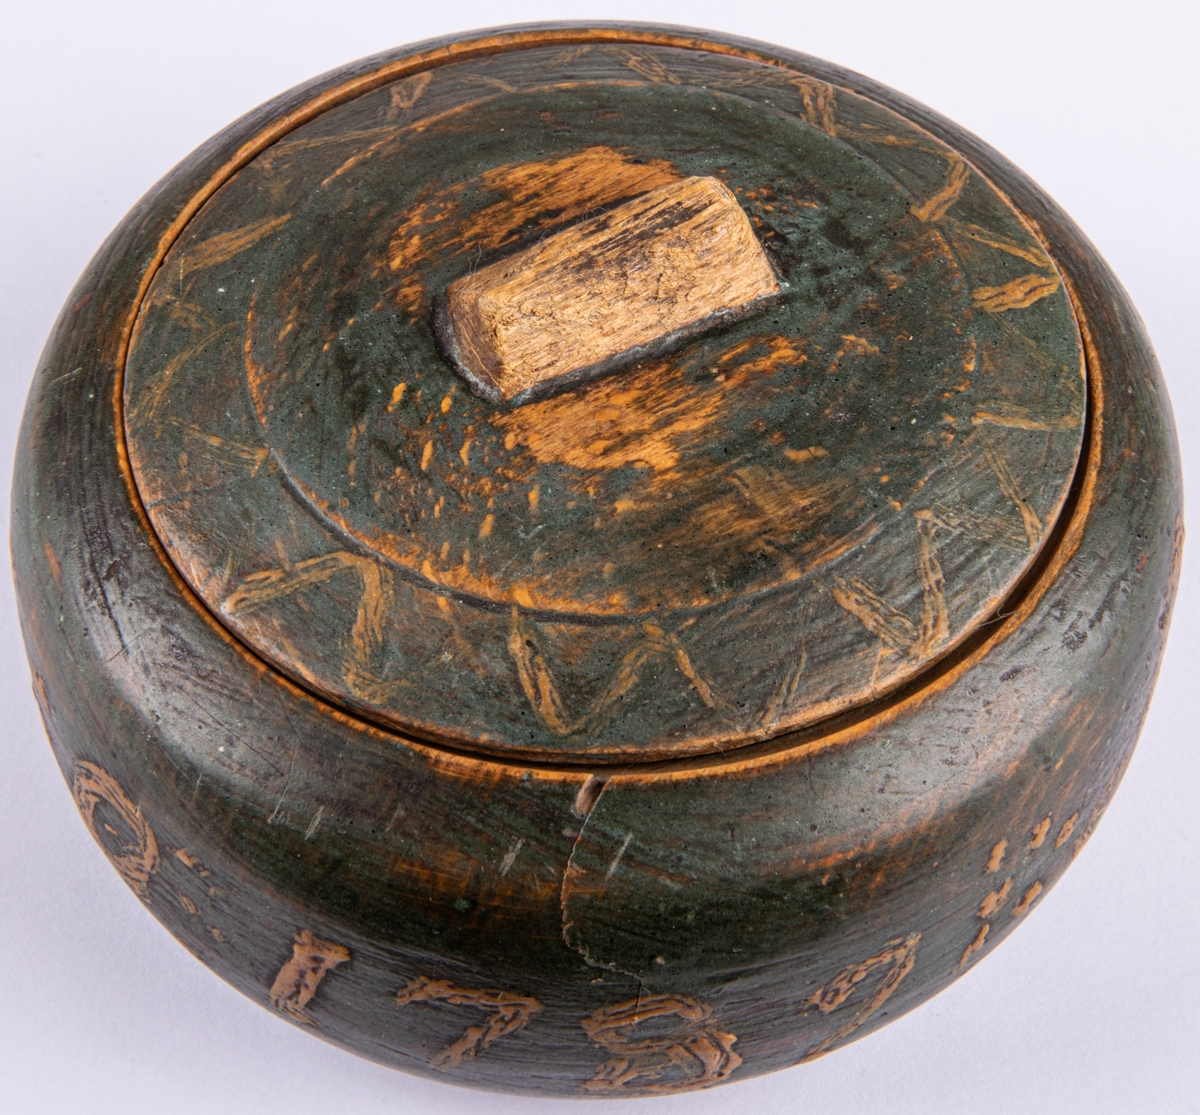 Träask med lock, trä, grönmålat med sicksackmönster, märkt ABQ AO 1789.